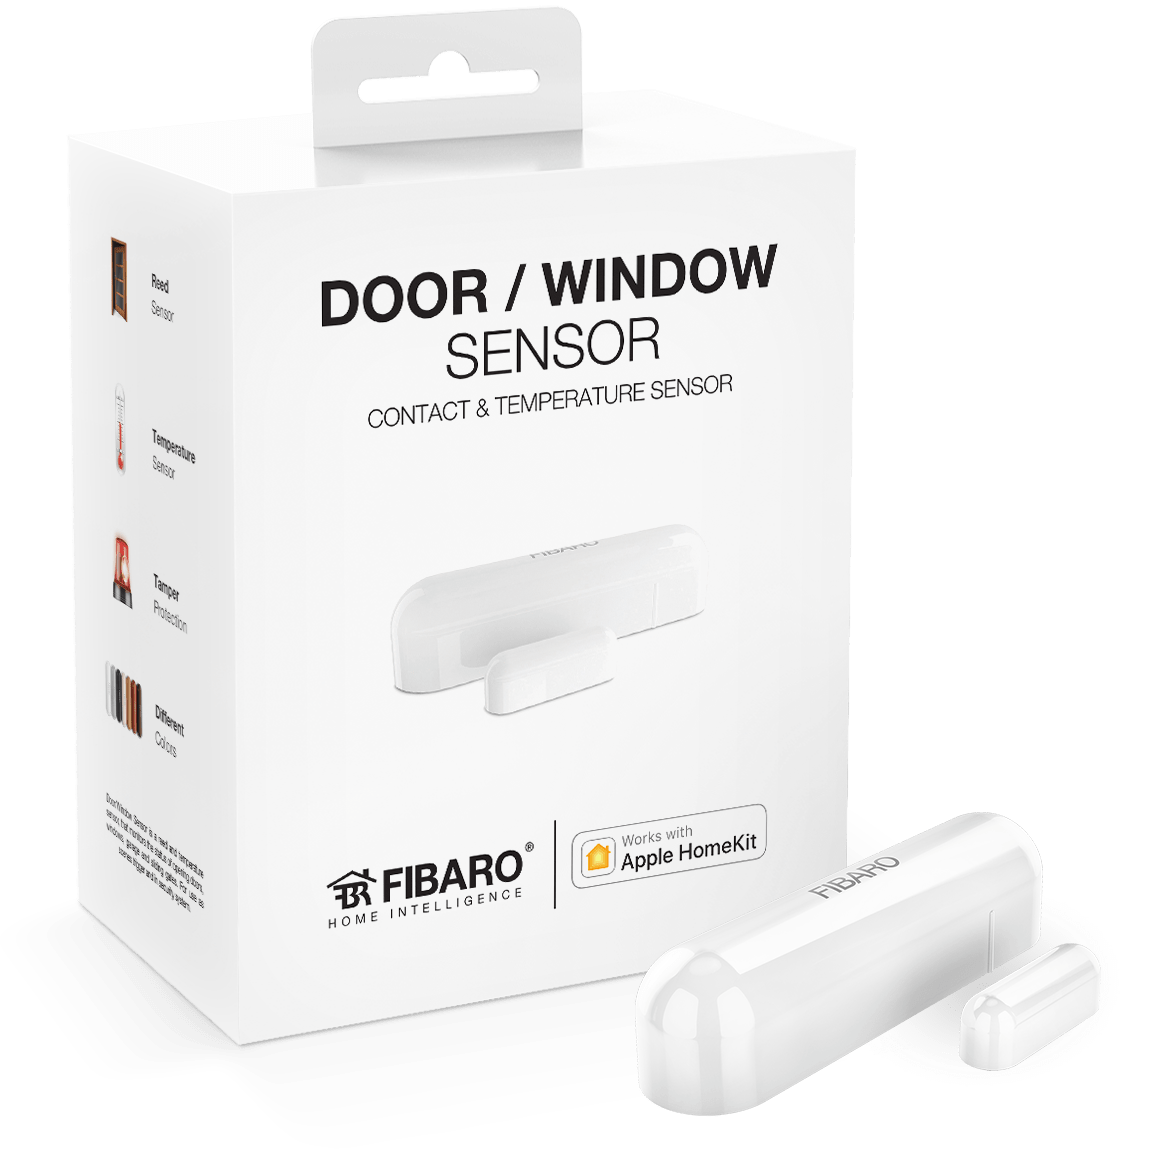 https://www.smart-secure.co.uk/wp-content/uploads/sites/3/2020/07/HK-DoorWindow-Sensor-Left-01.png